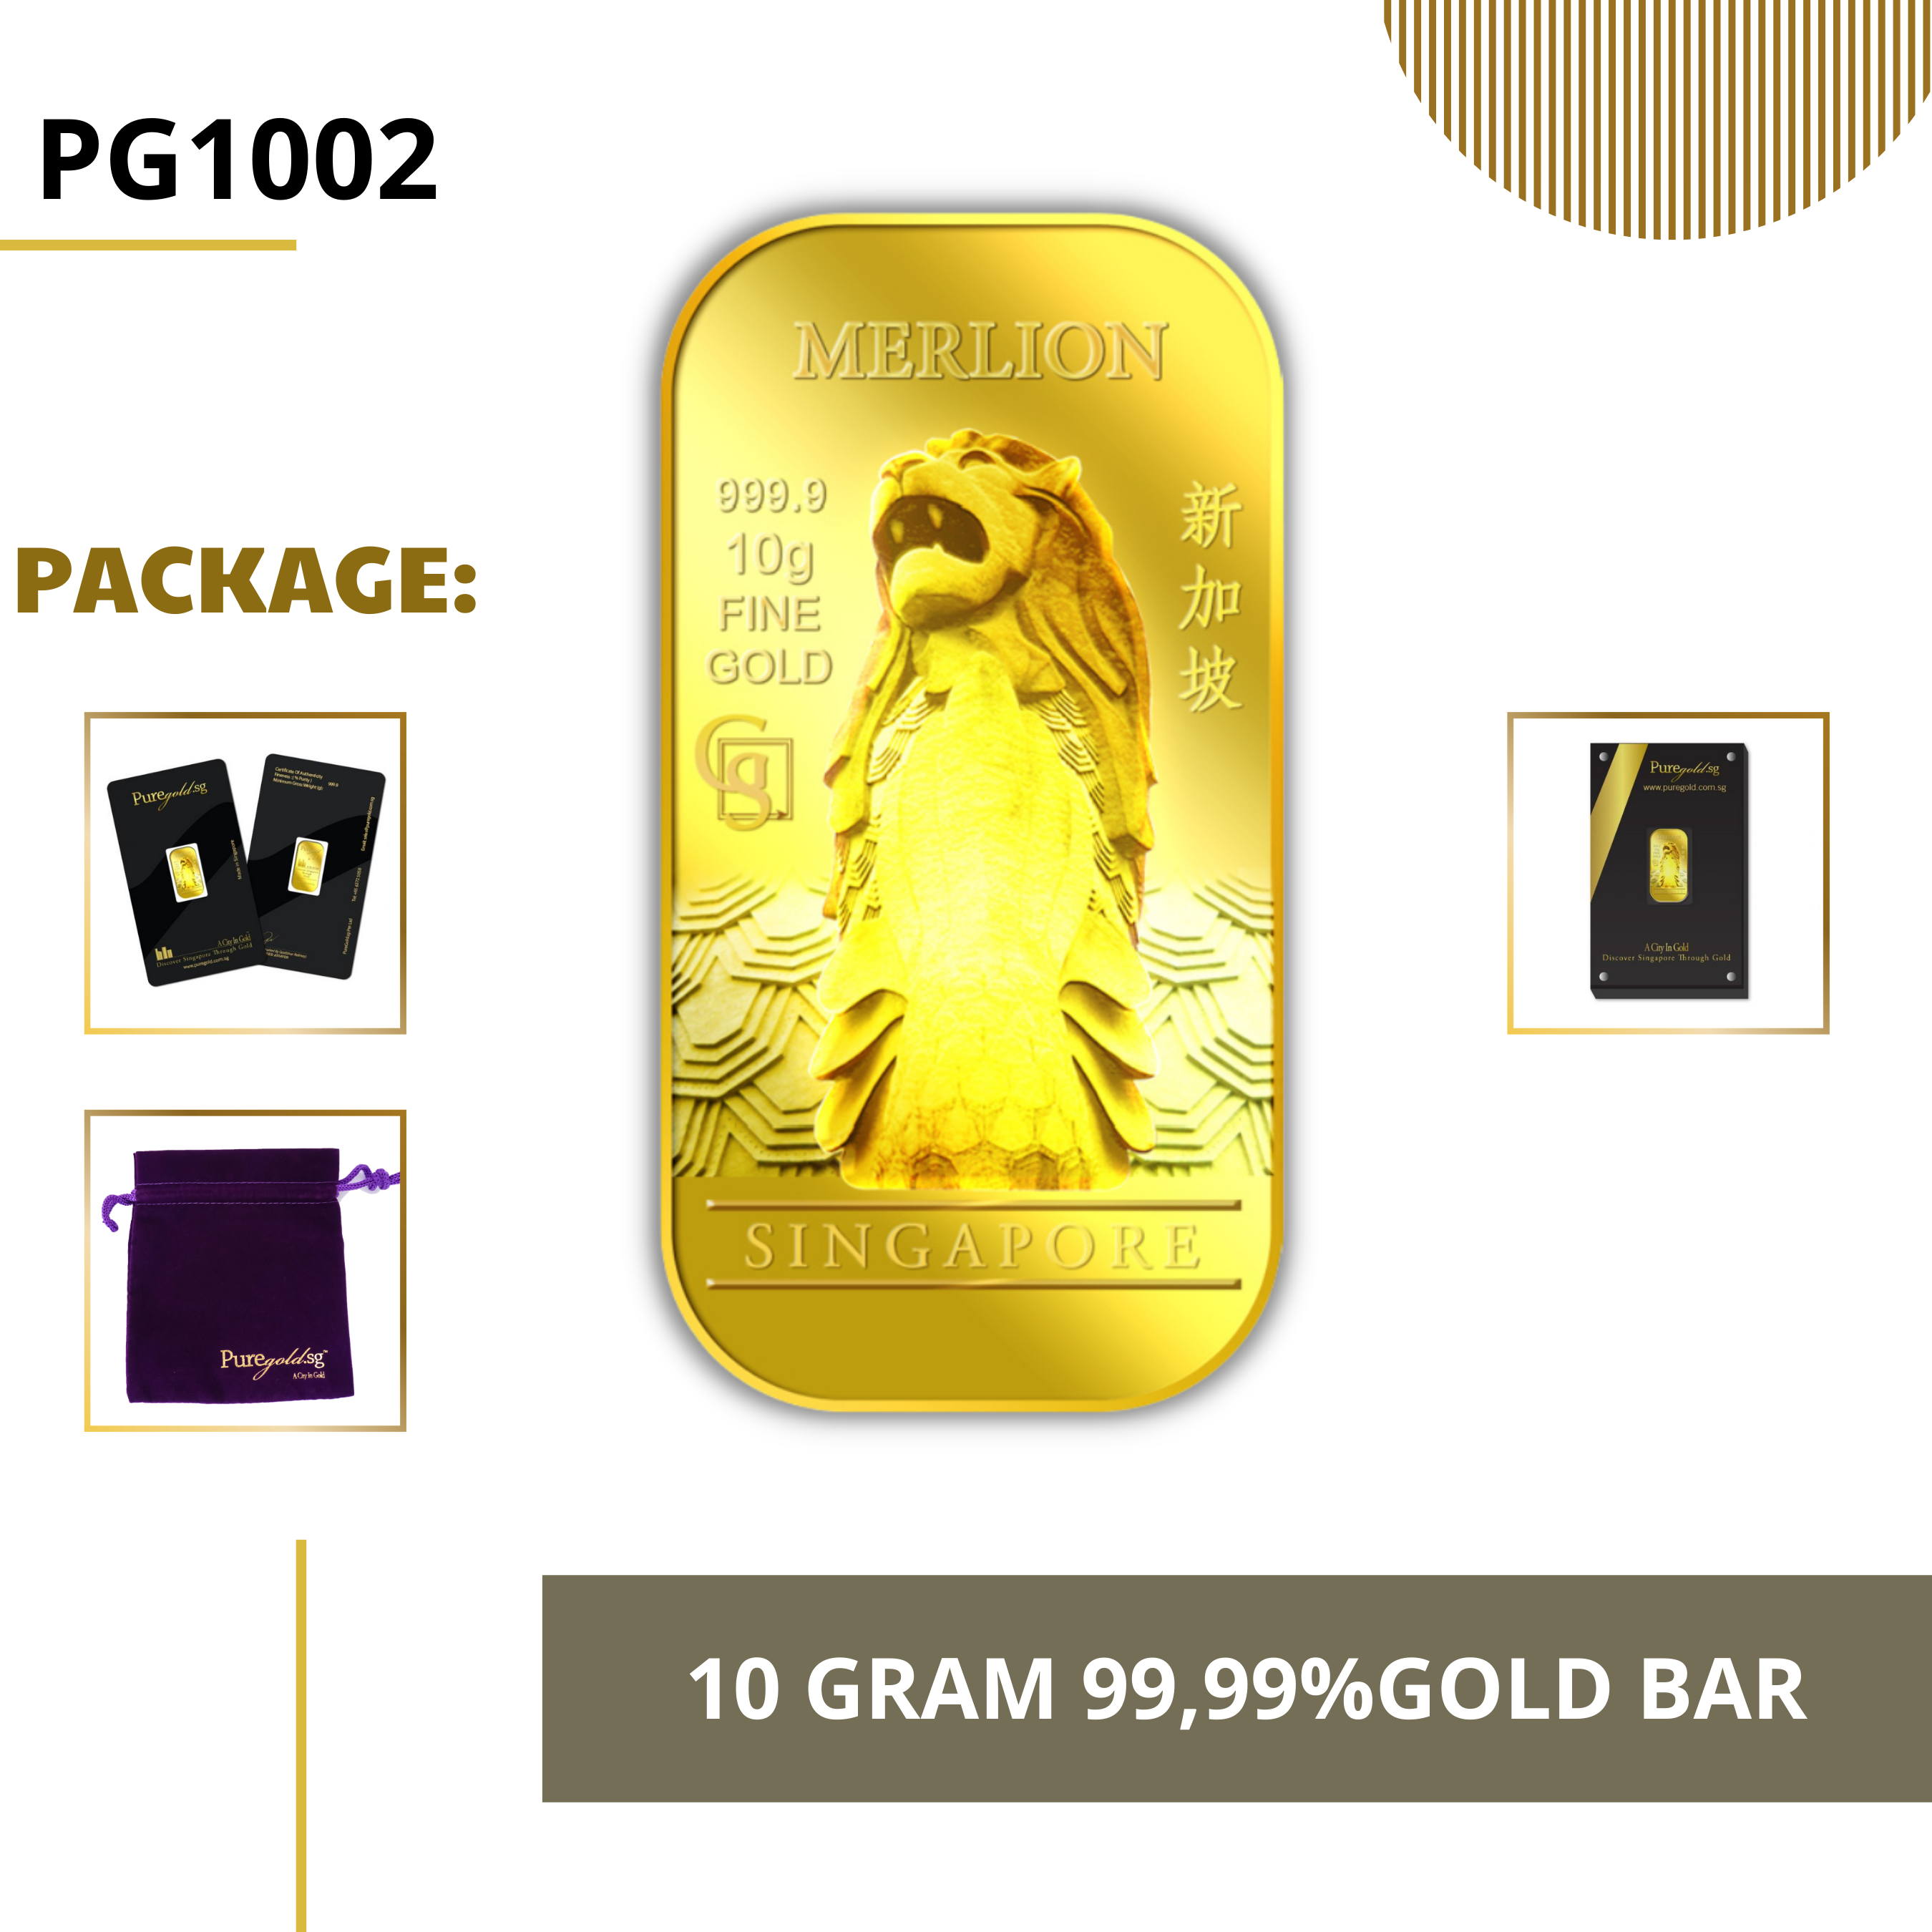 PURE GOLD 99.99% ทองคำแท่ง / 10Gram Merlion Classic gold bar/ ทองคำแท้จากสิงคโปร์ / ทองคำ 10 กรัม / ทอง 99.99% *การันตีทองแท้*